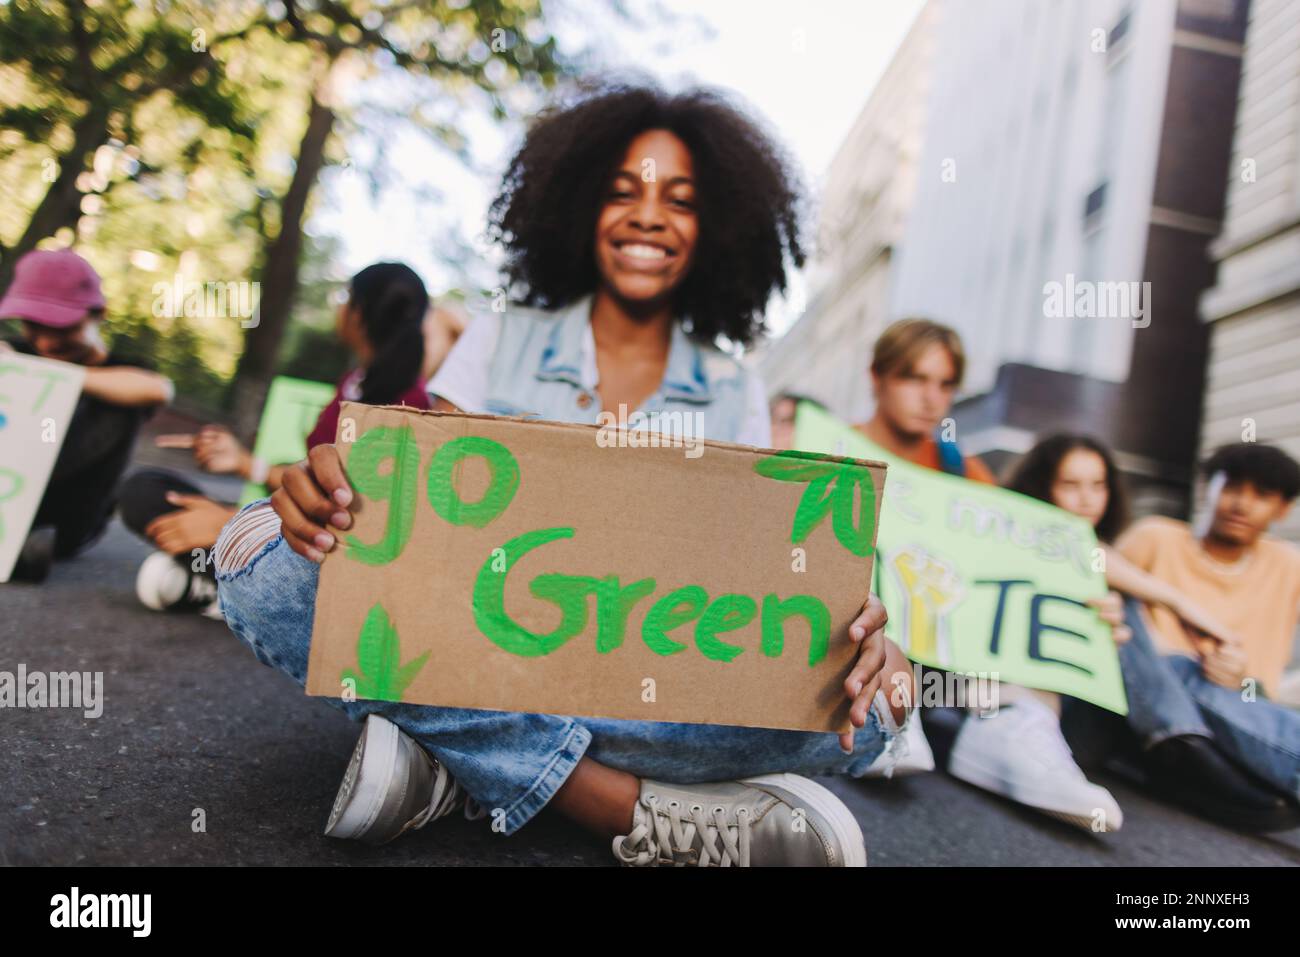 Bonne adolescente tenant une affiche « Go green » tout en étant assise avec un groupe de manifestants lors d'une manifestation contre le changement climatique. Les jeunes militants multiculturels Banque D'Images